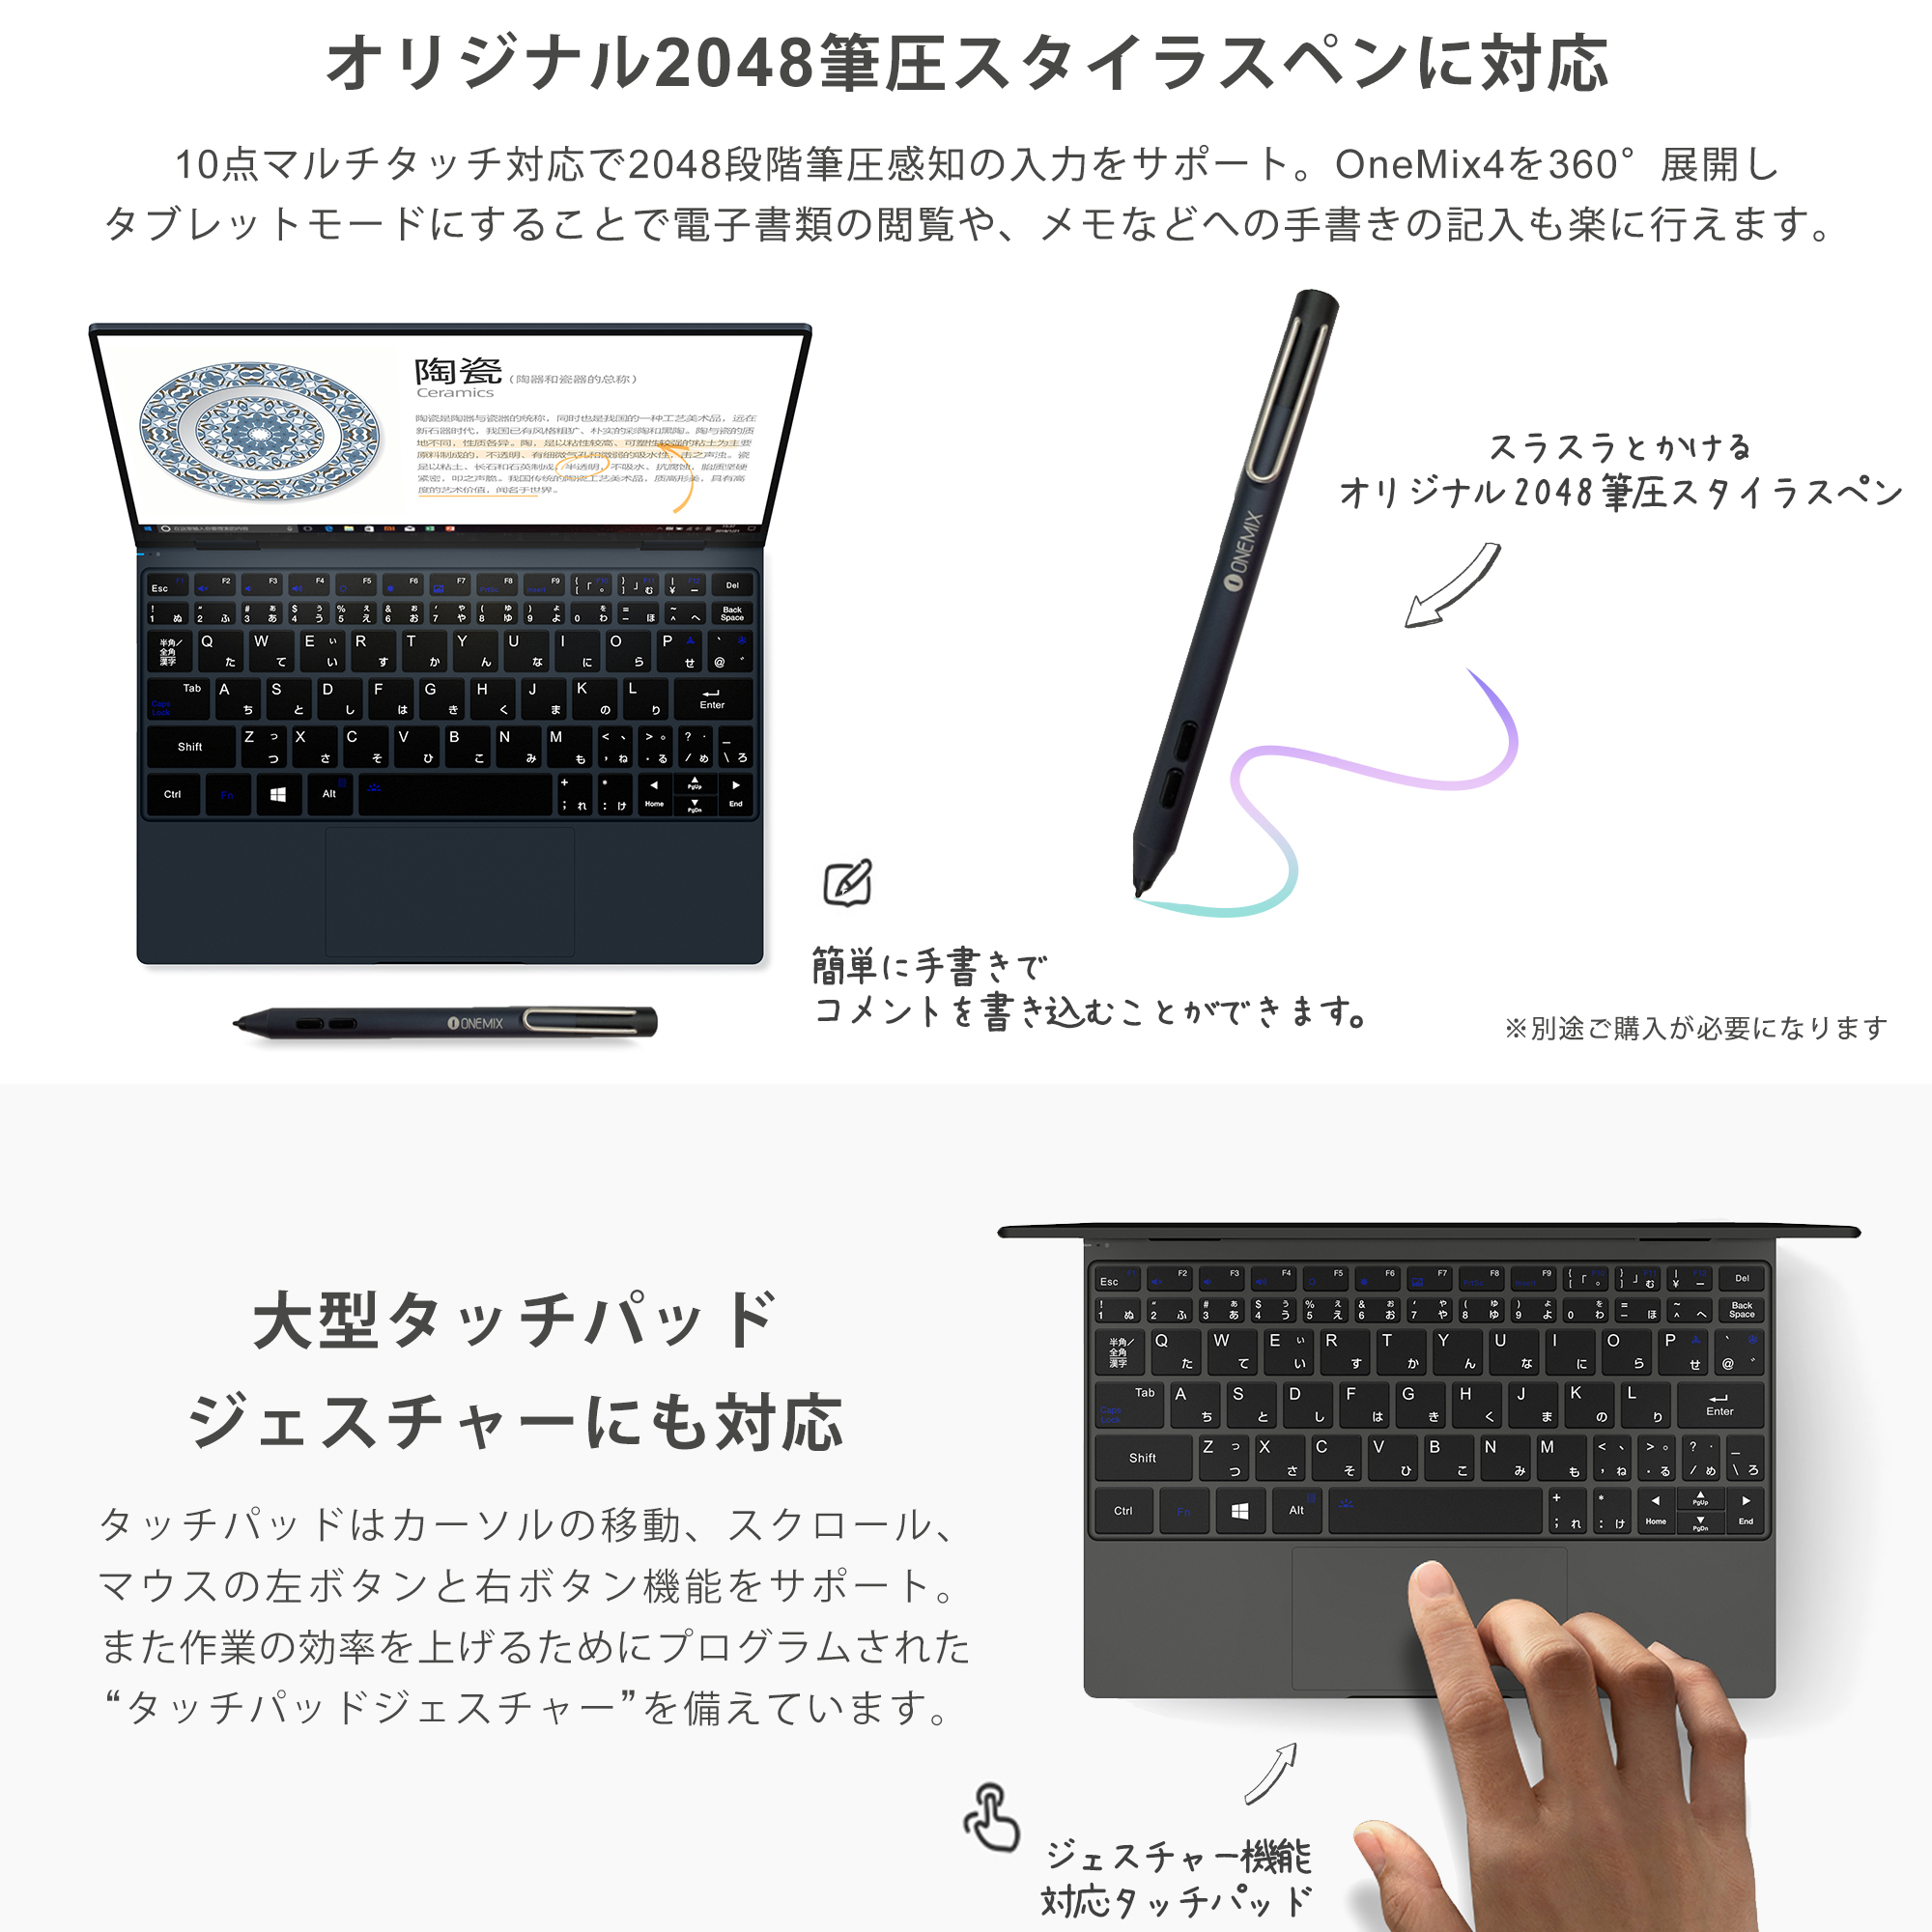 世界最小10型ノート Onemix4日本版がついに発売 日本語キーボードも選べ11万50円から Engadget 日本版